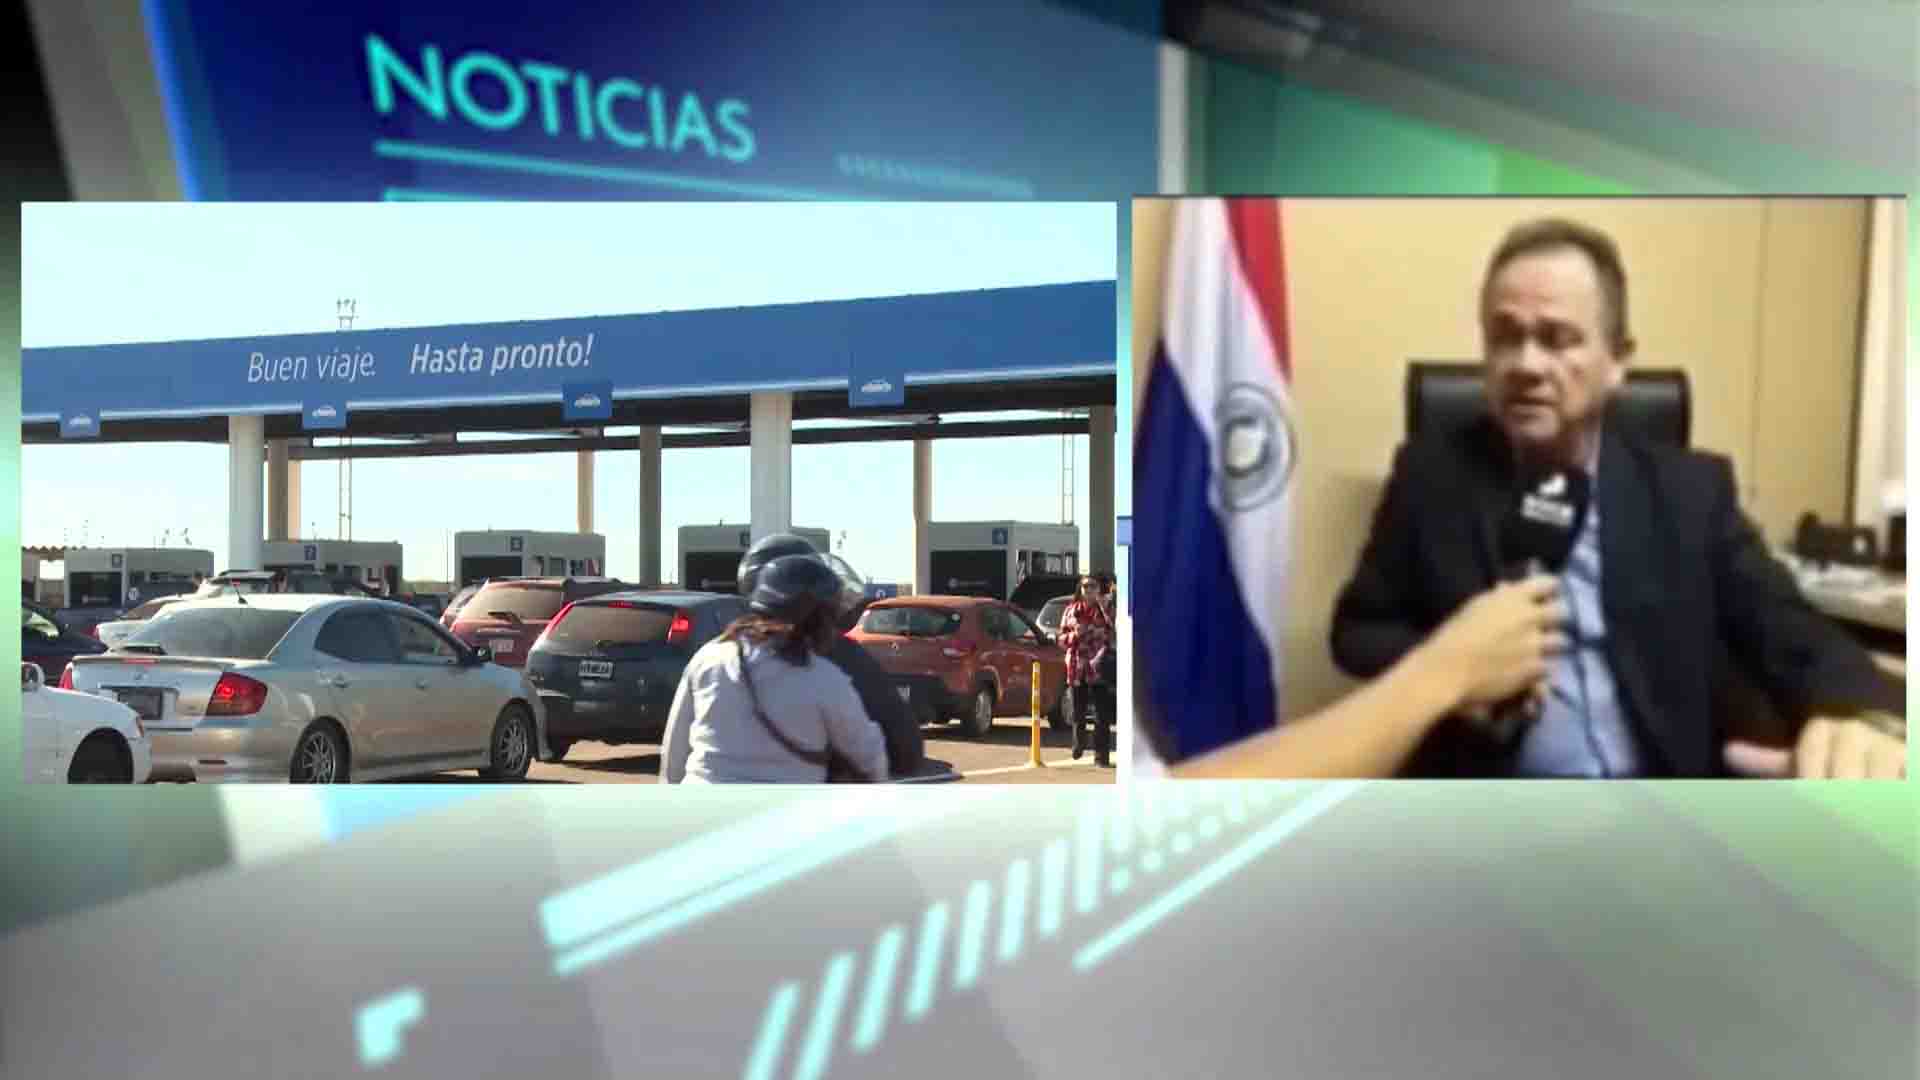 Ordenar el puente: Cónsul paraguayo dialogará por soluciones